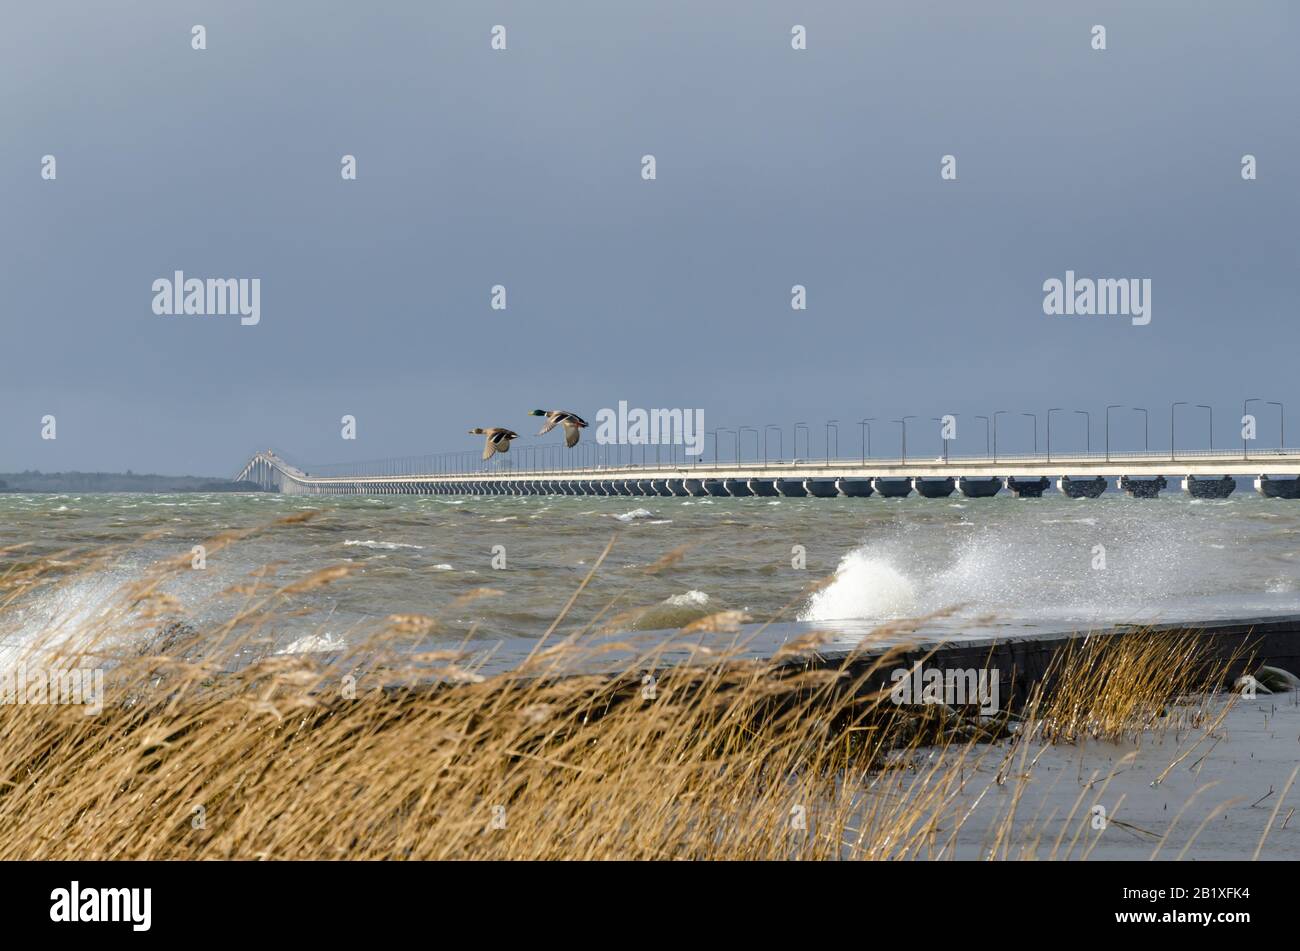 El puente Oland que conecta la isla Oland con Suecia continental con patos voladores un día tormentoso Foto de stock